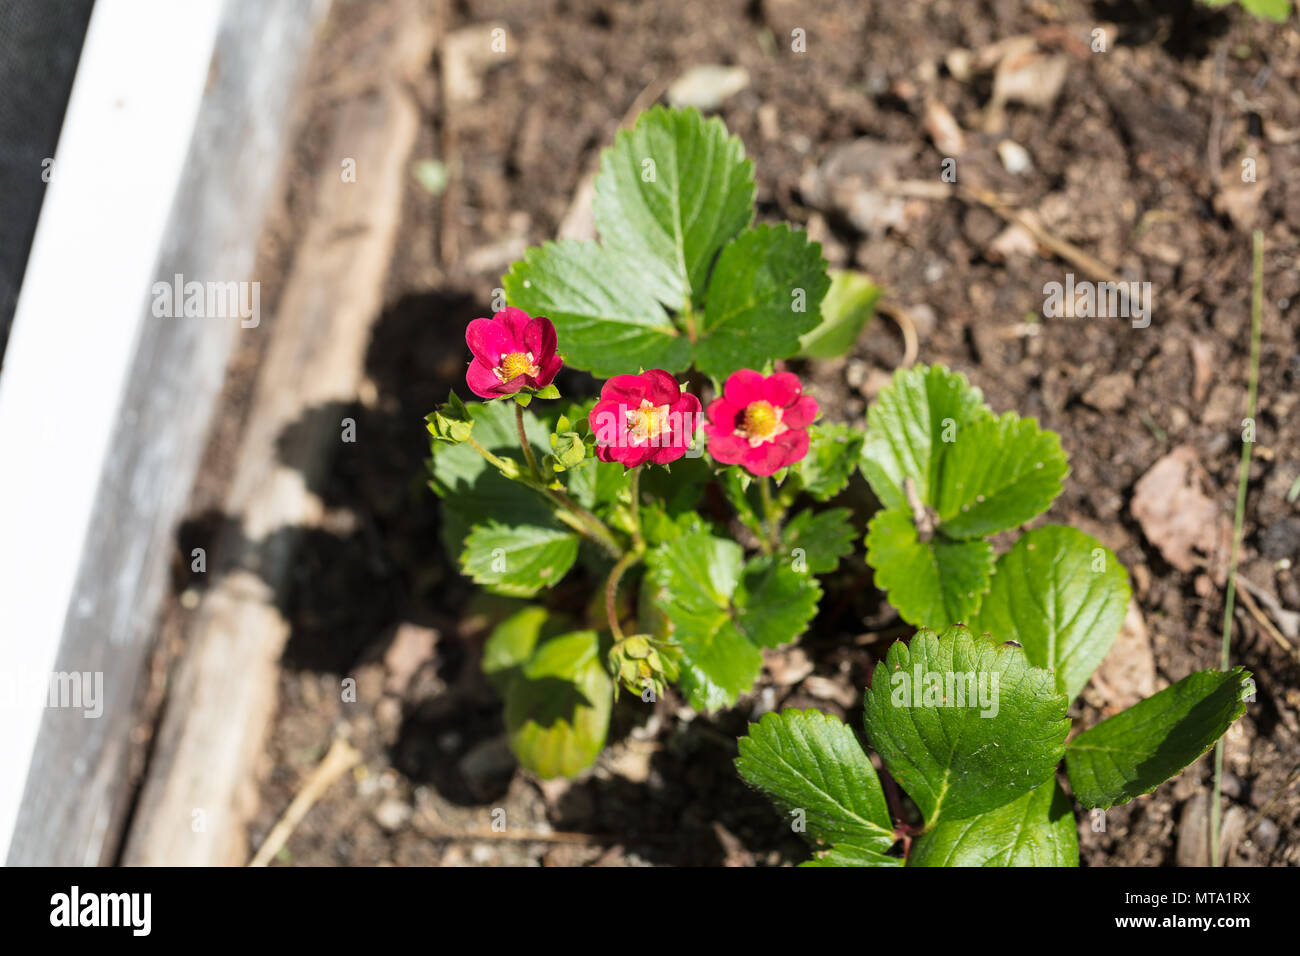 'Ruby Ann' White strawberry, Jordgubbe (Fragaria ananassa) Stock Photo